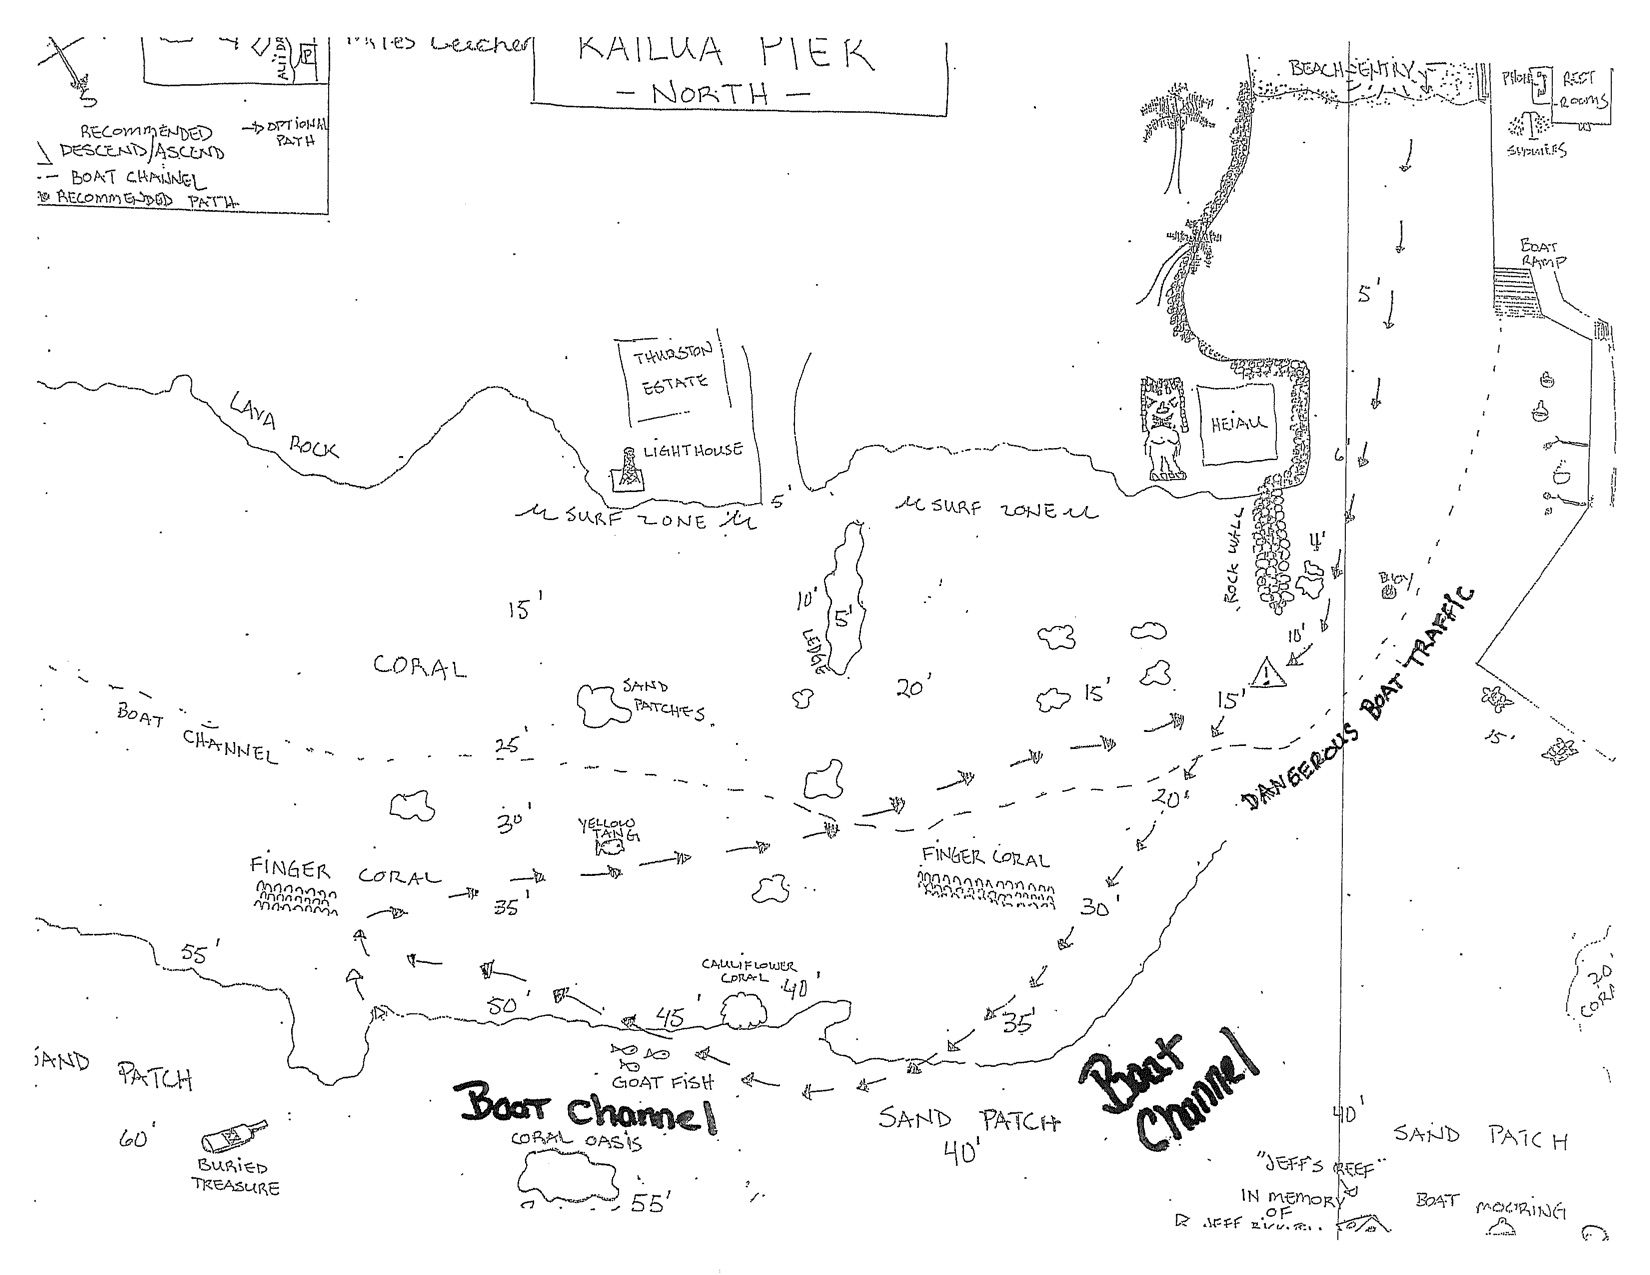 Mahukona Dive Site Map, Big Island Hawaii